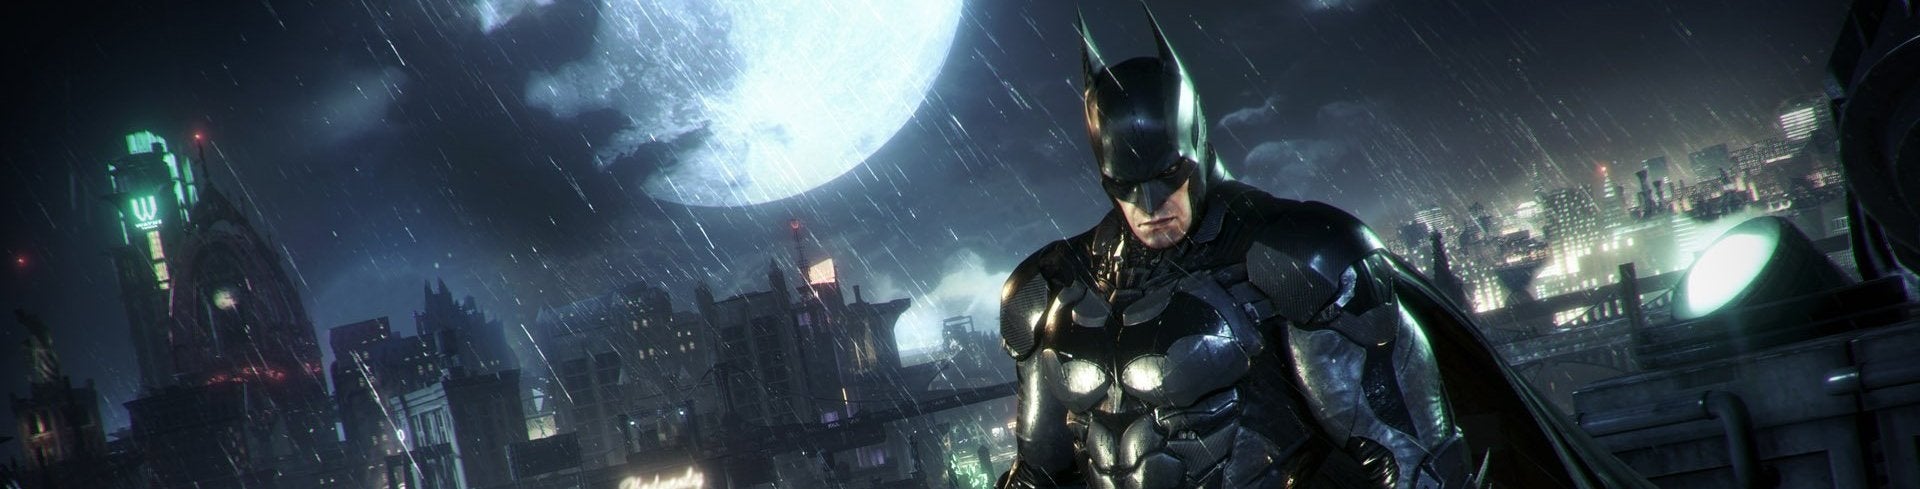 Imagen para Guía Batman Arkham Knight